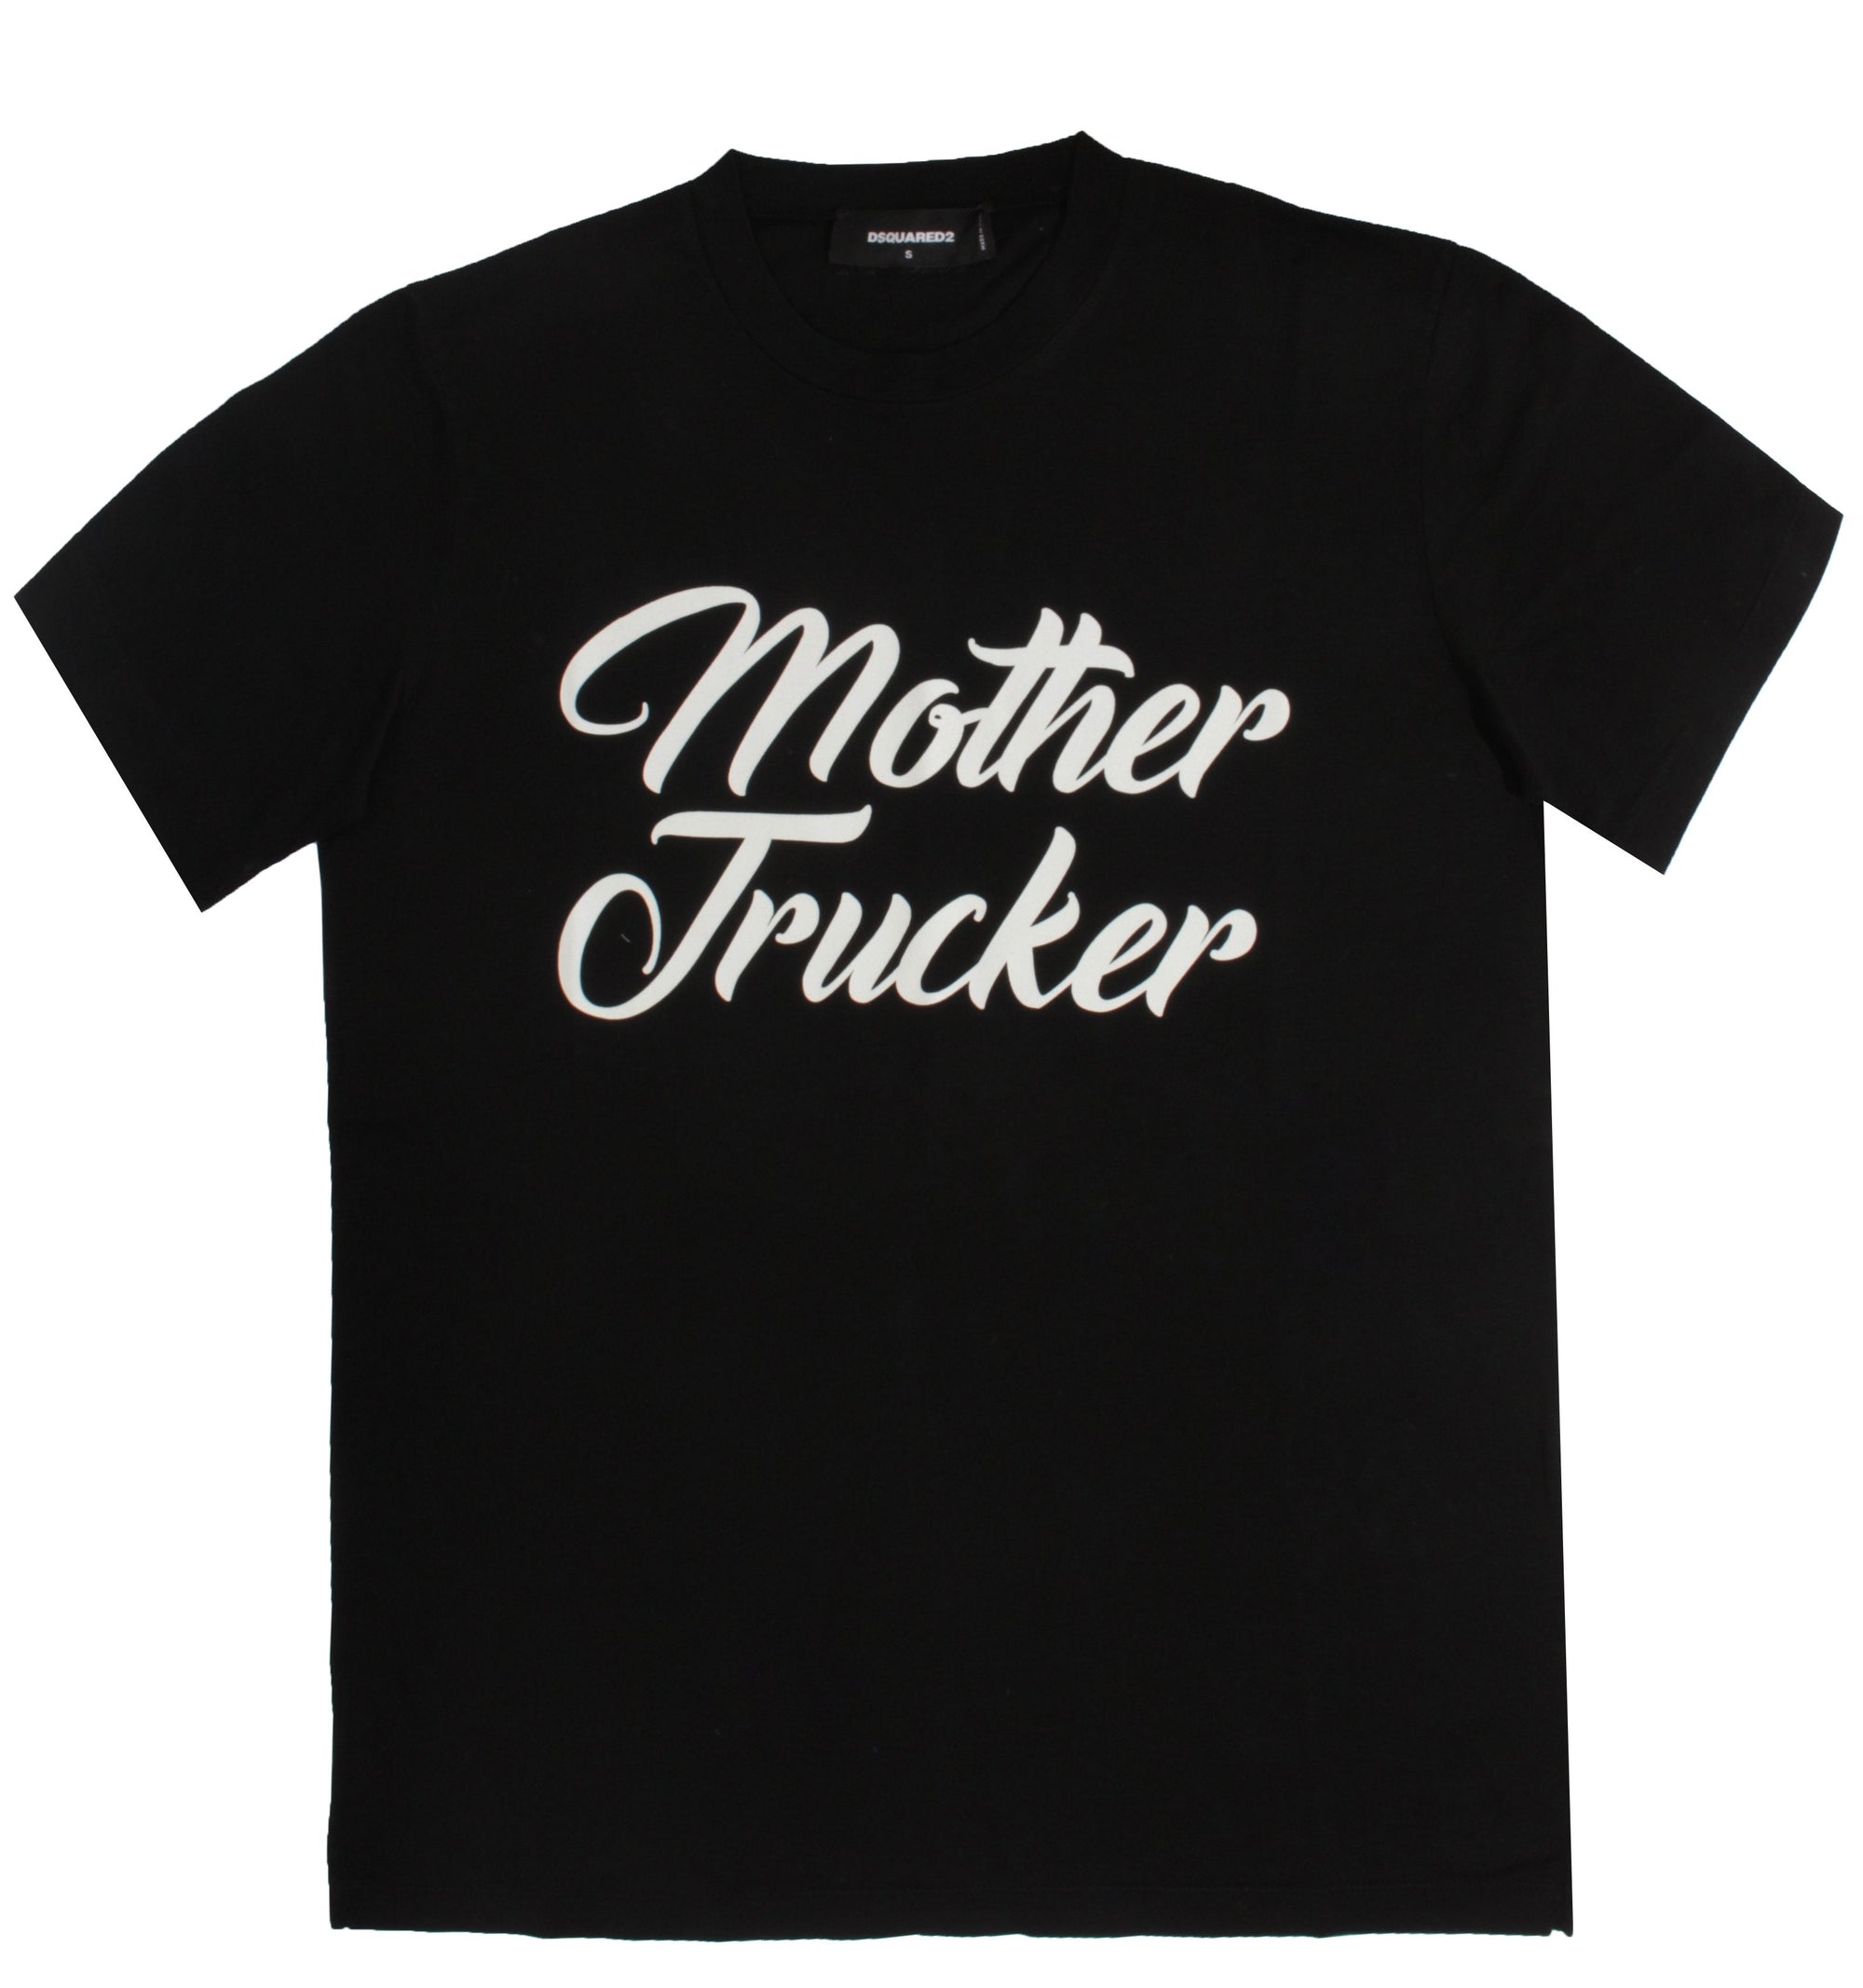 Mother Trucker Graphic Tee - Black